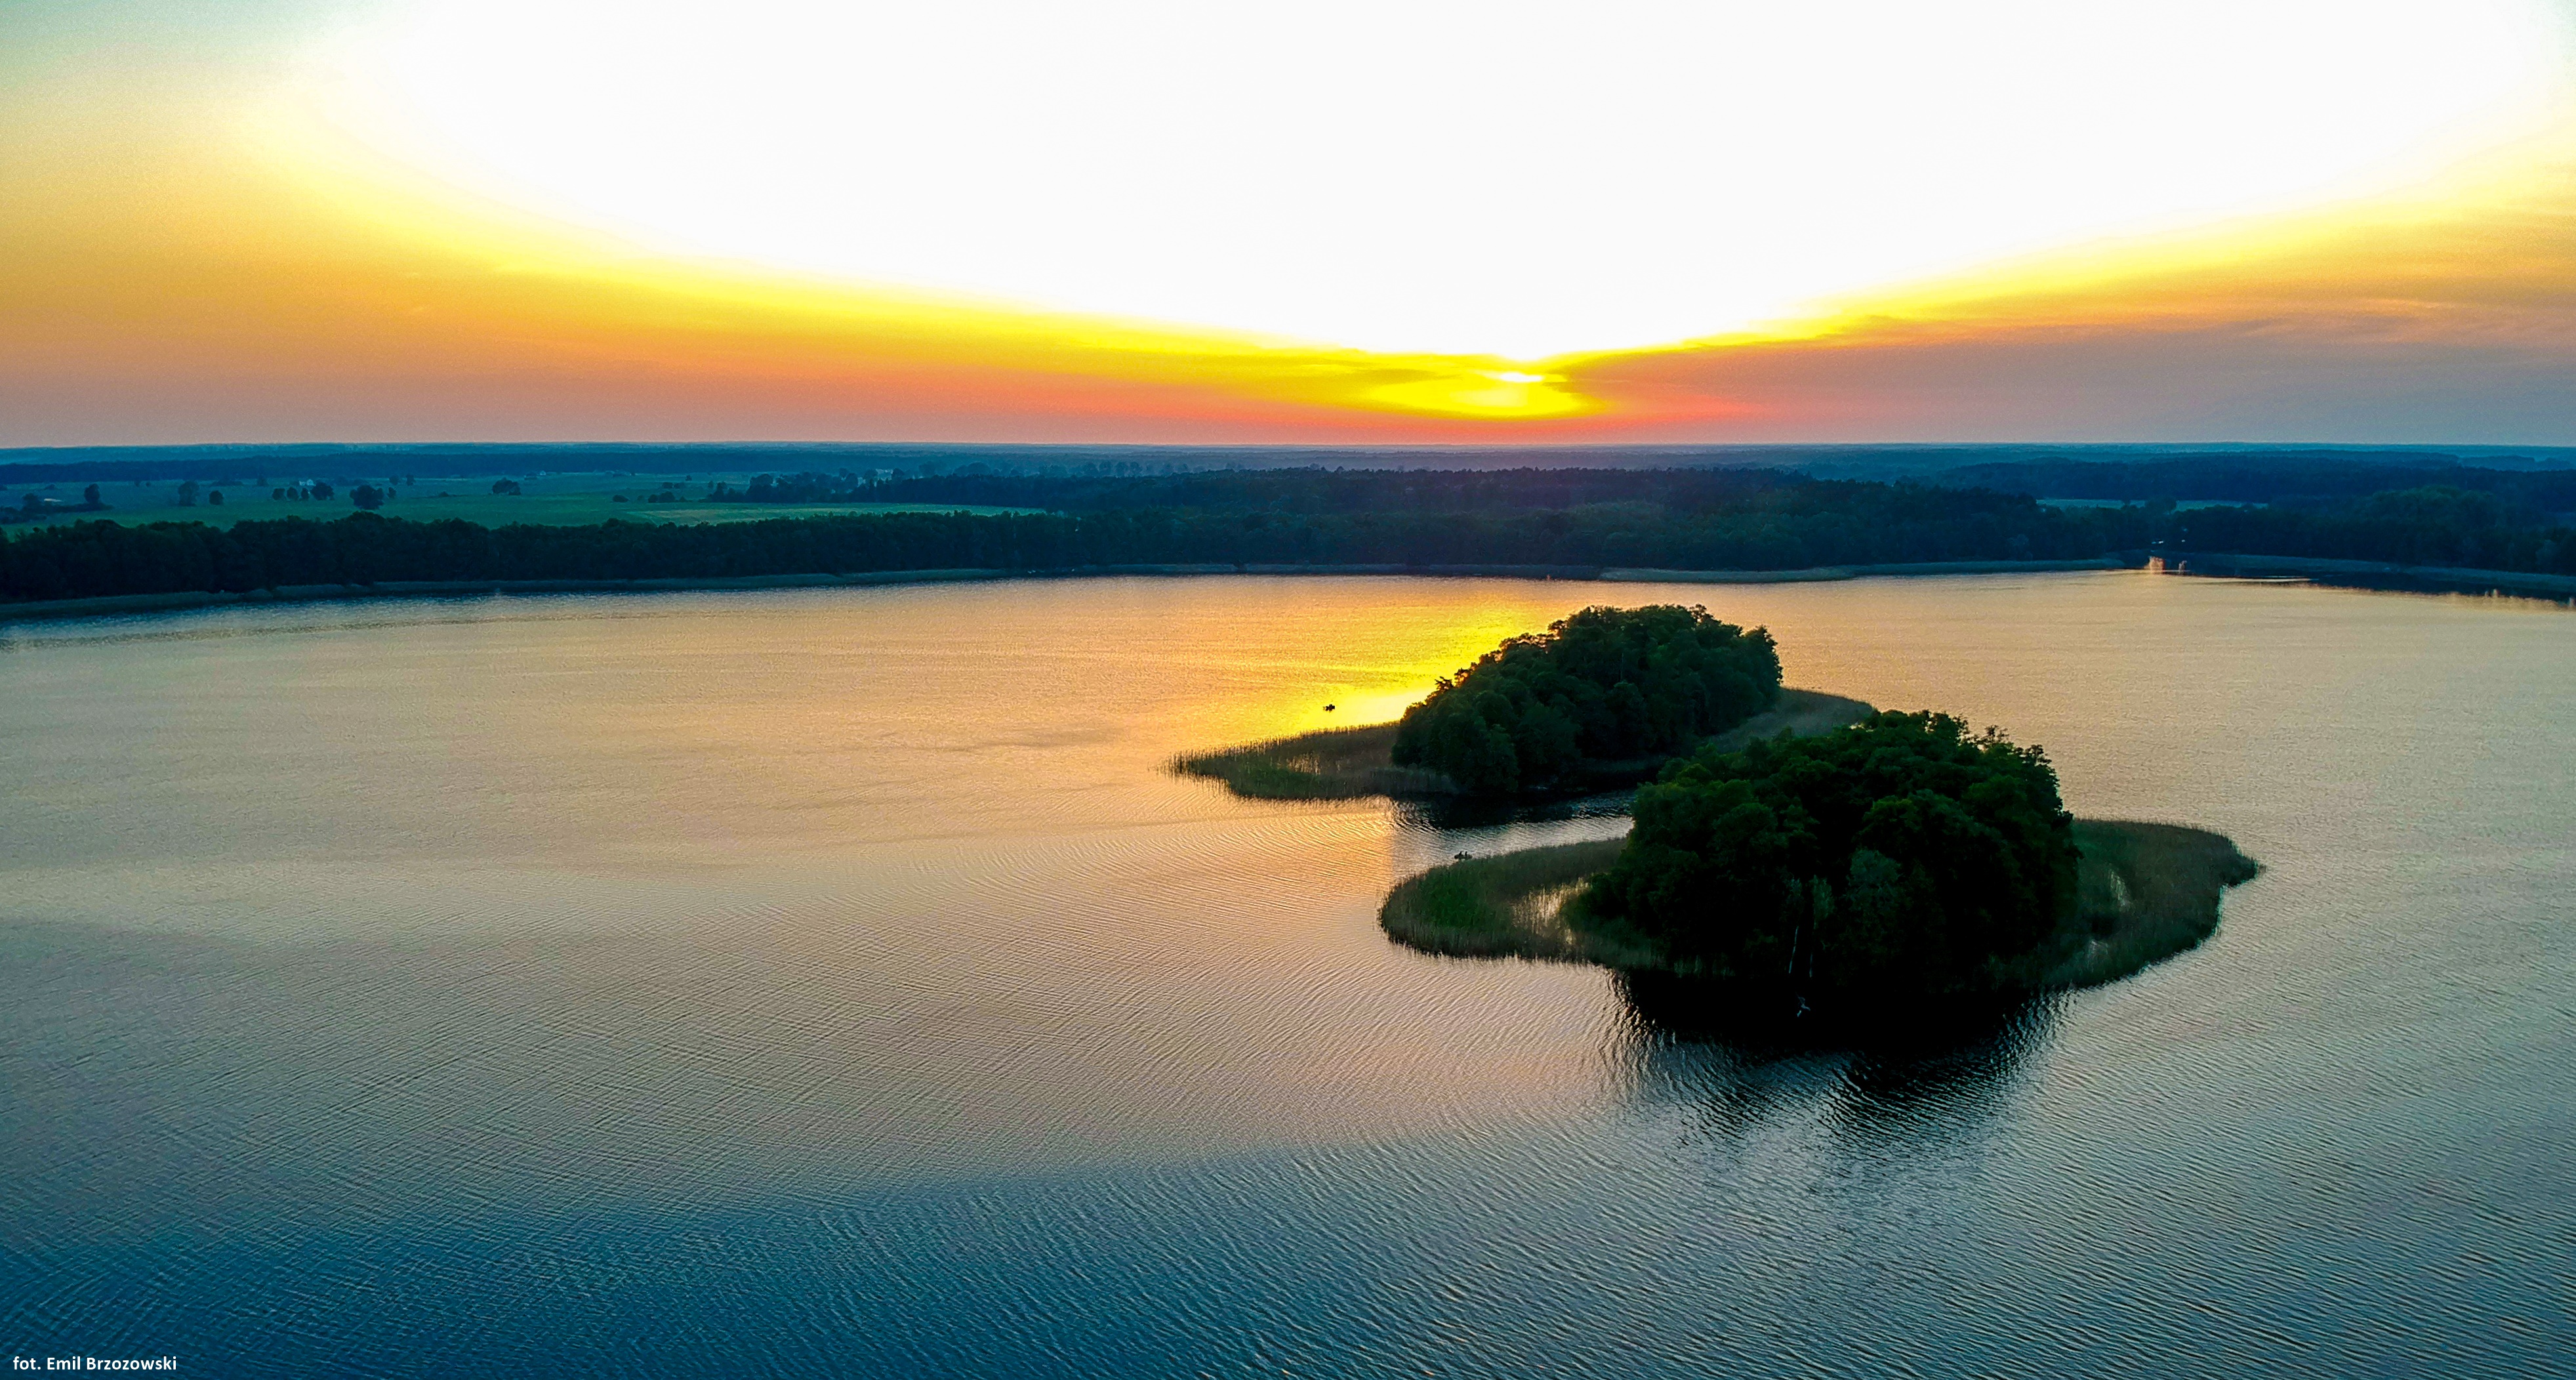 Jezioro Stelchno wyspy, fot. Emil Brzozowski